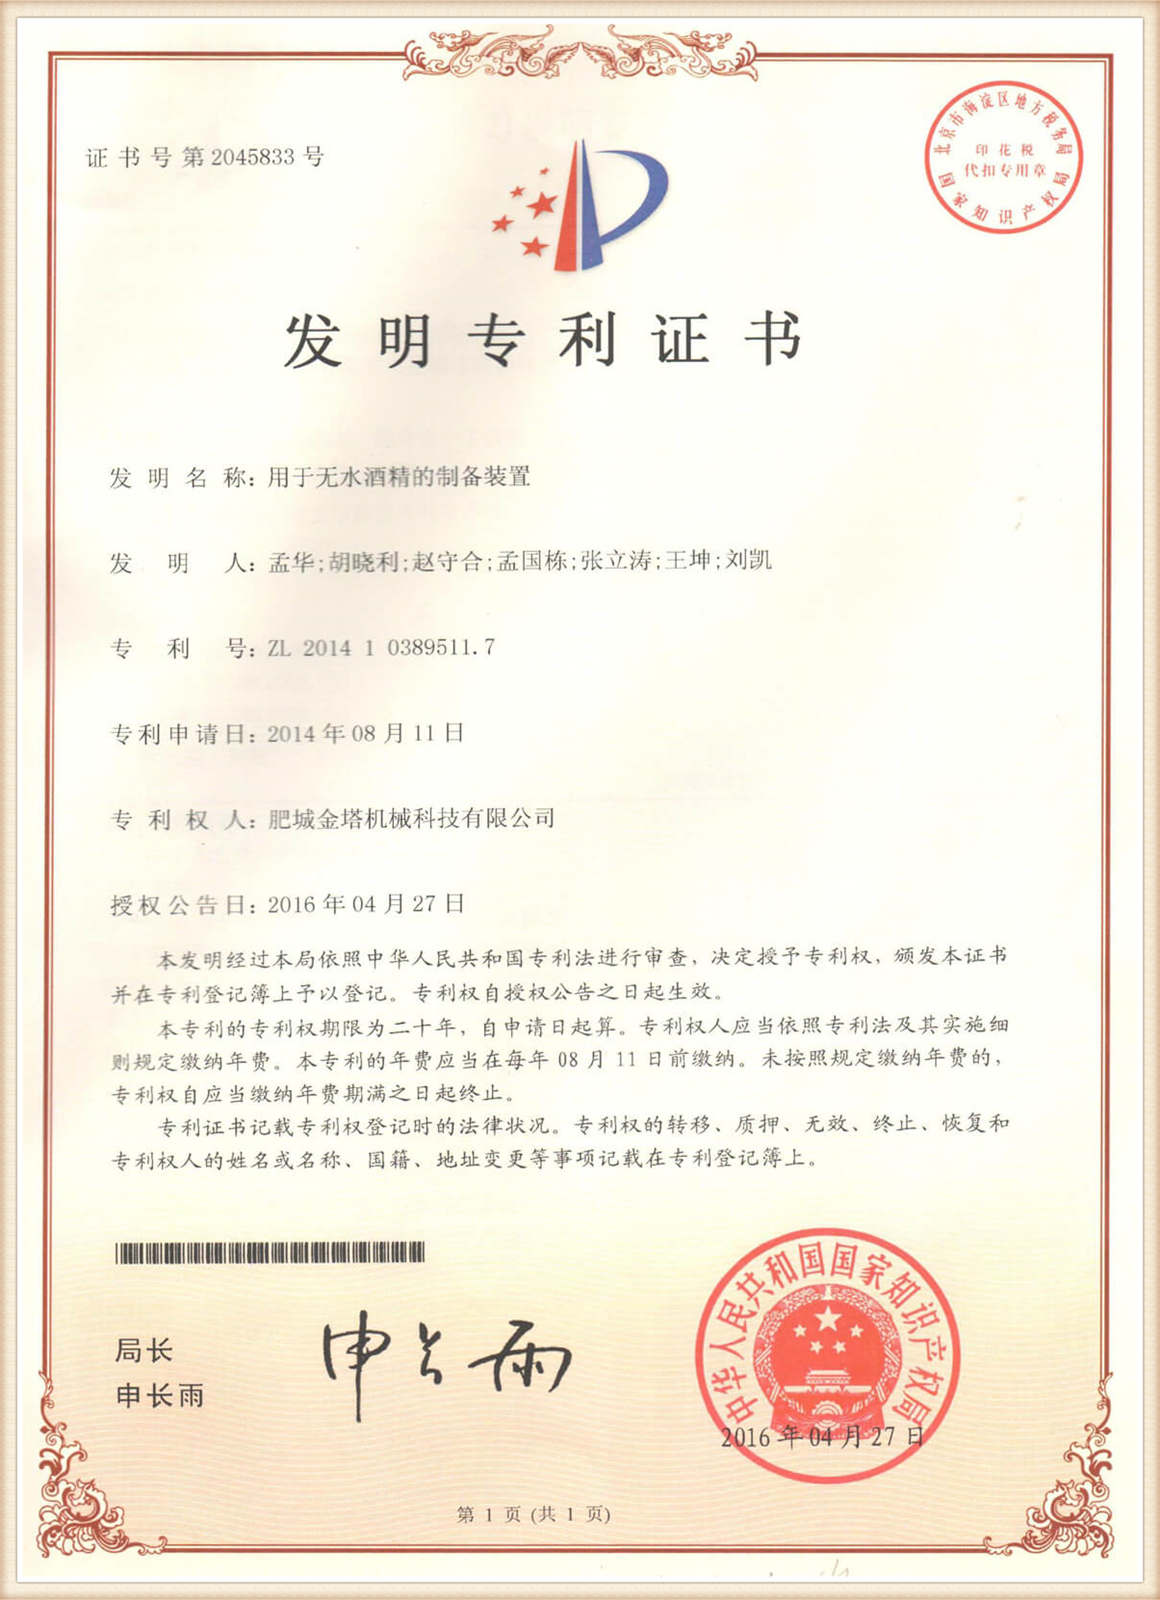 प्रमाणीकरण 08